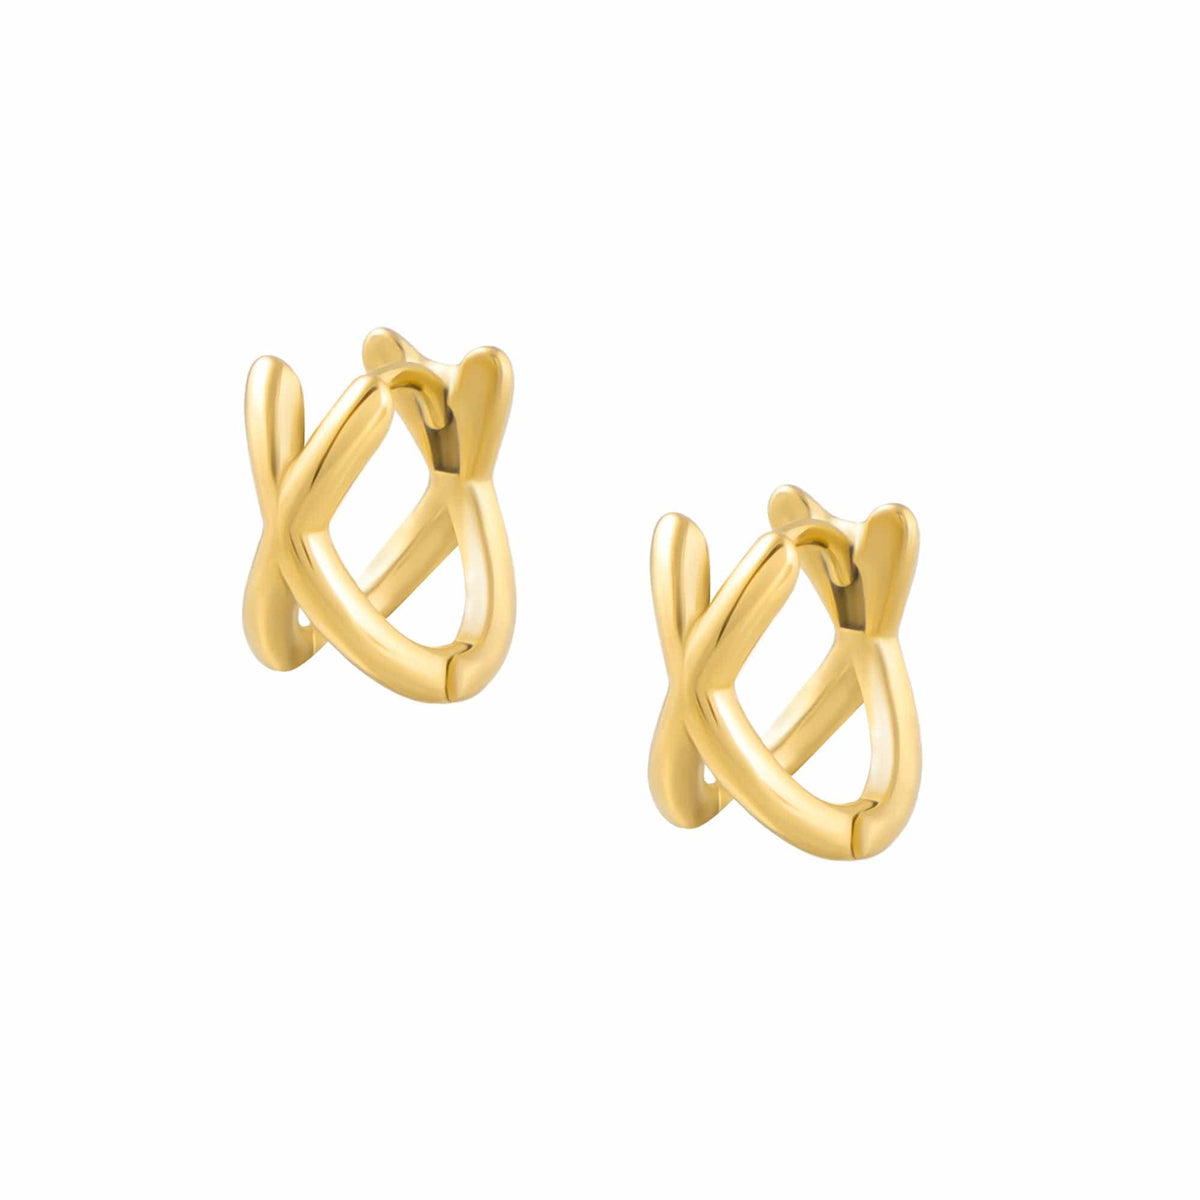 BohoMoon Stainless Steel Criss Cross Hoop Earrings Gold